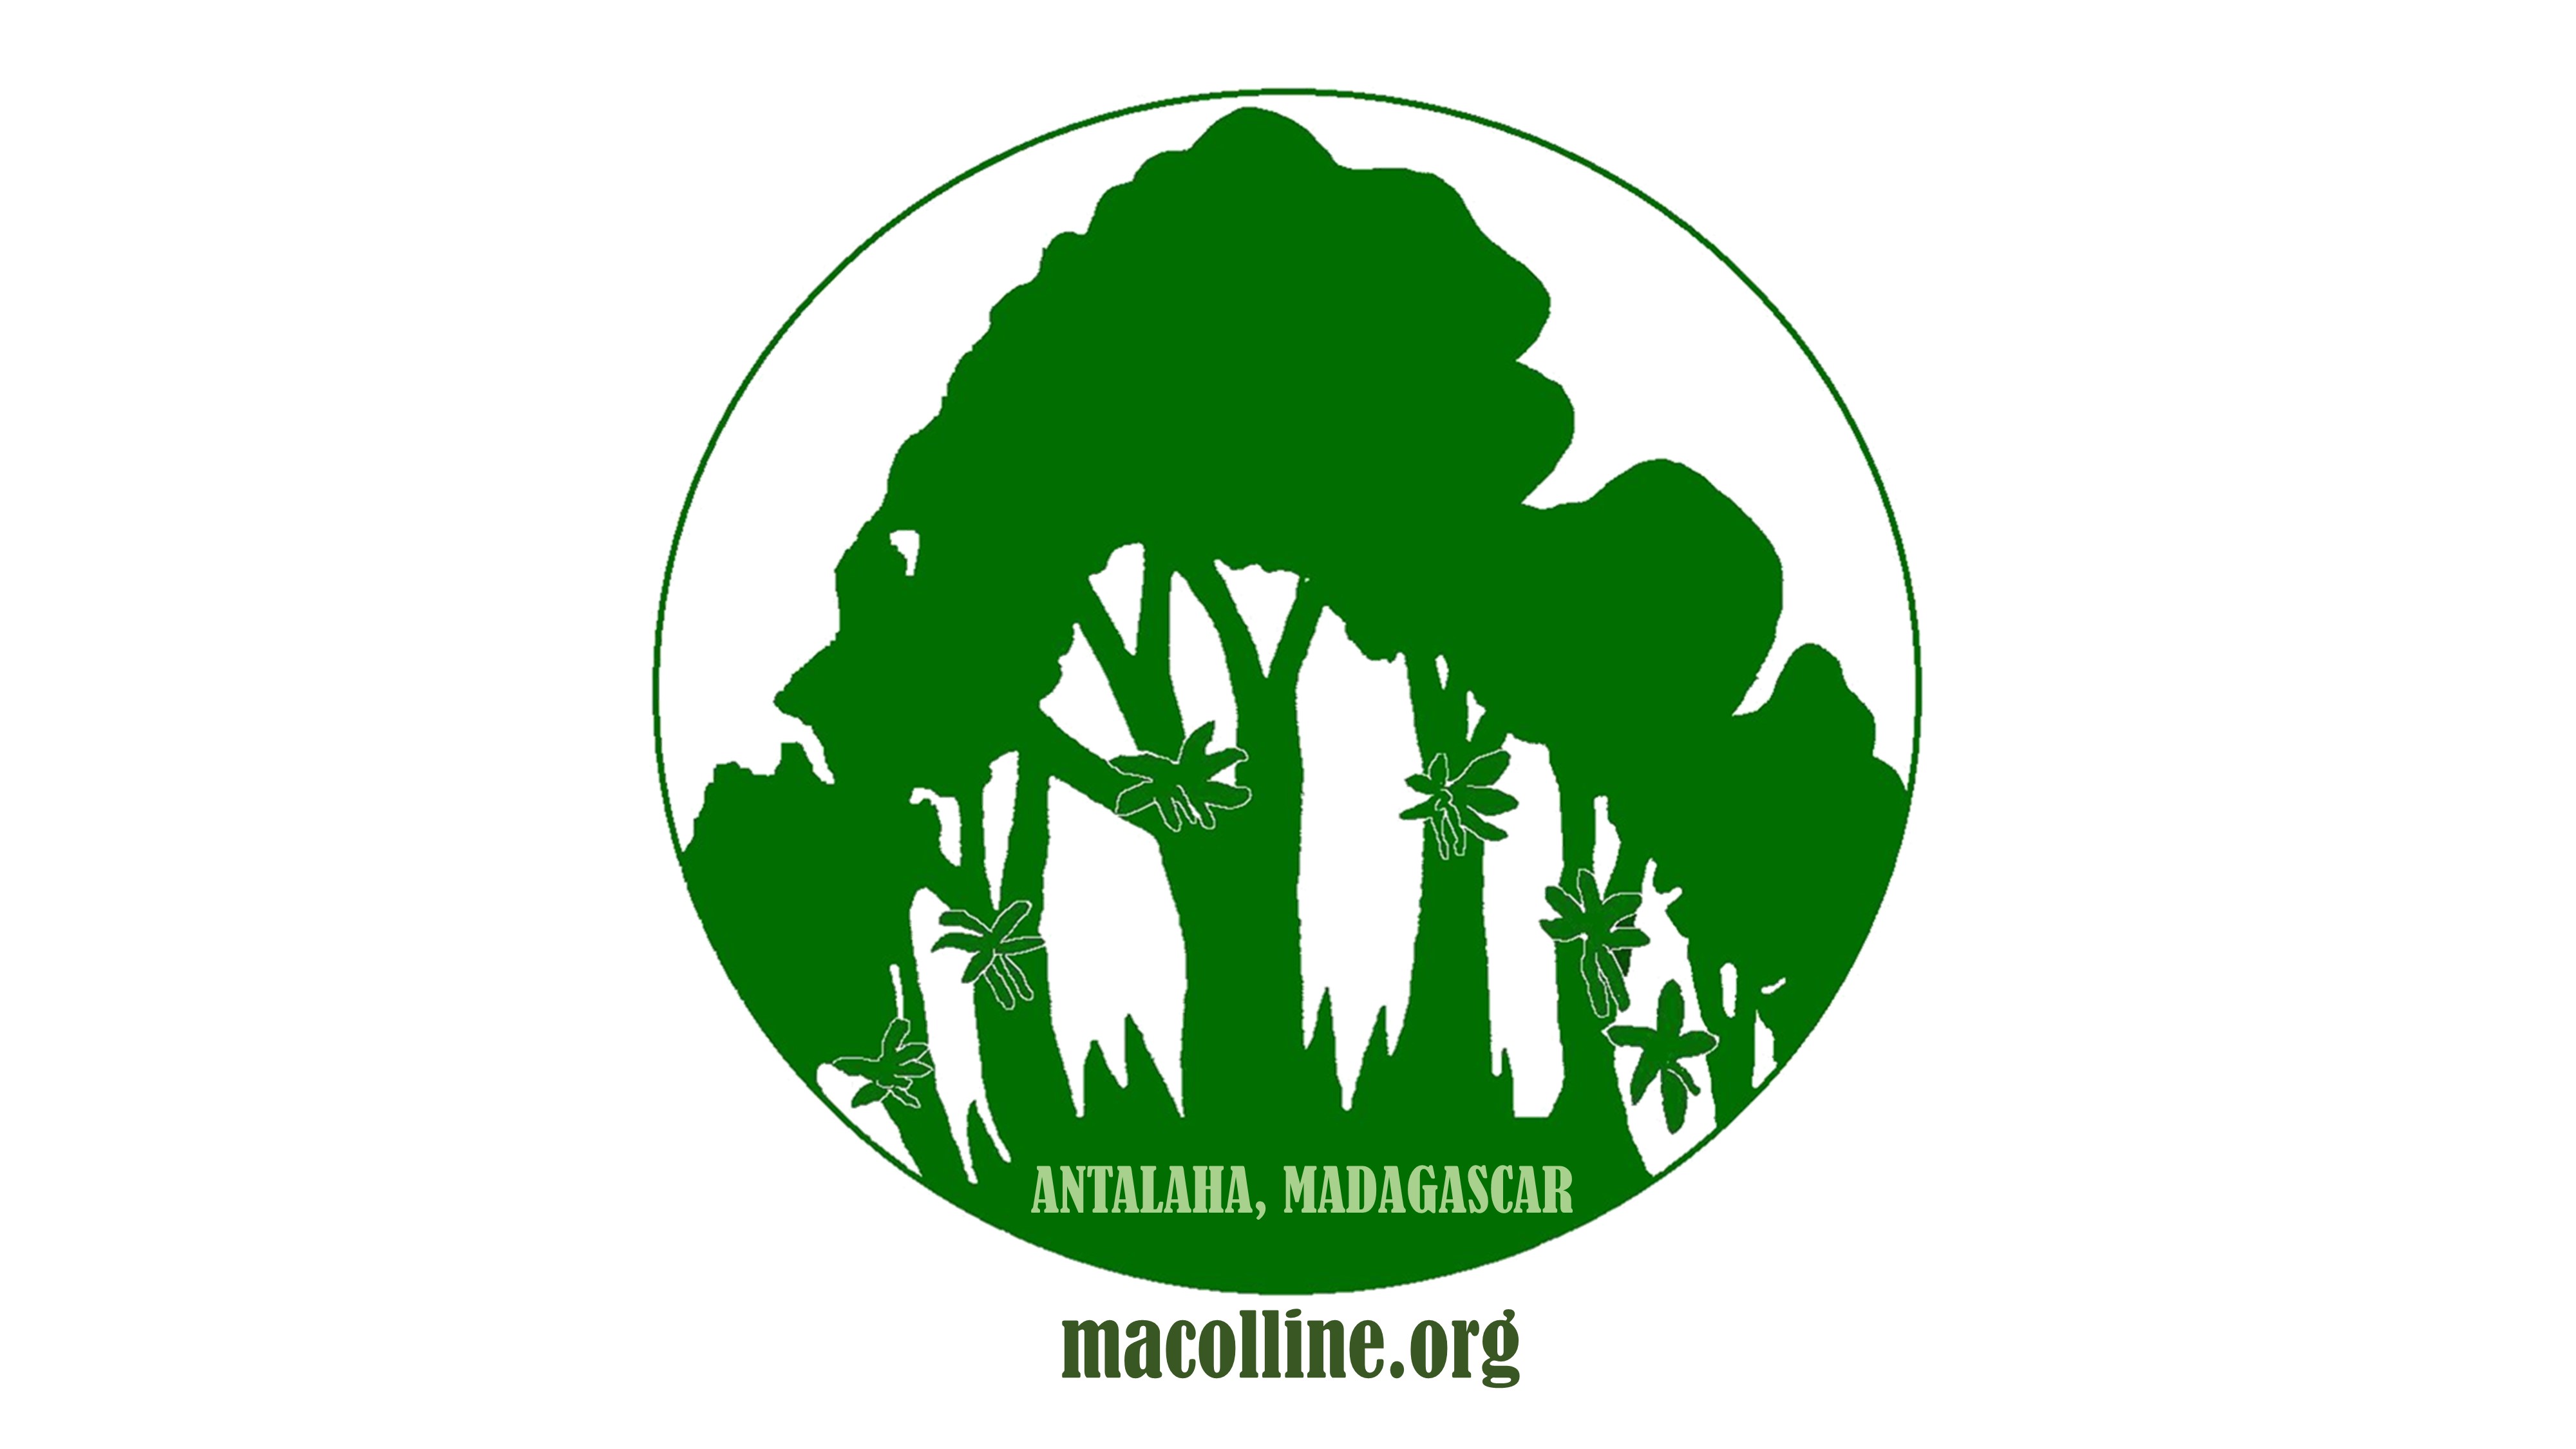 macolline logos website below